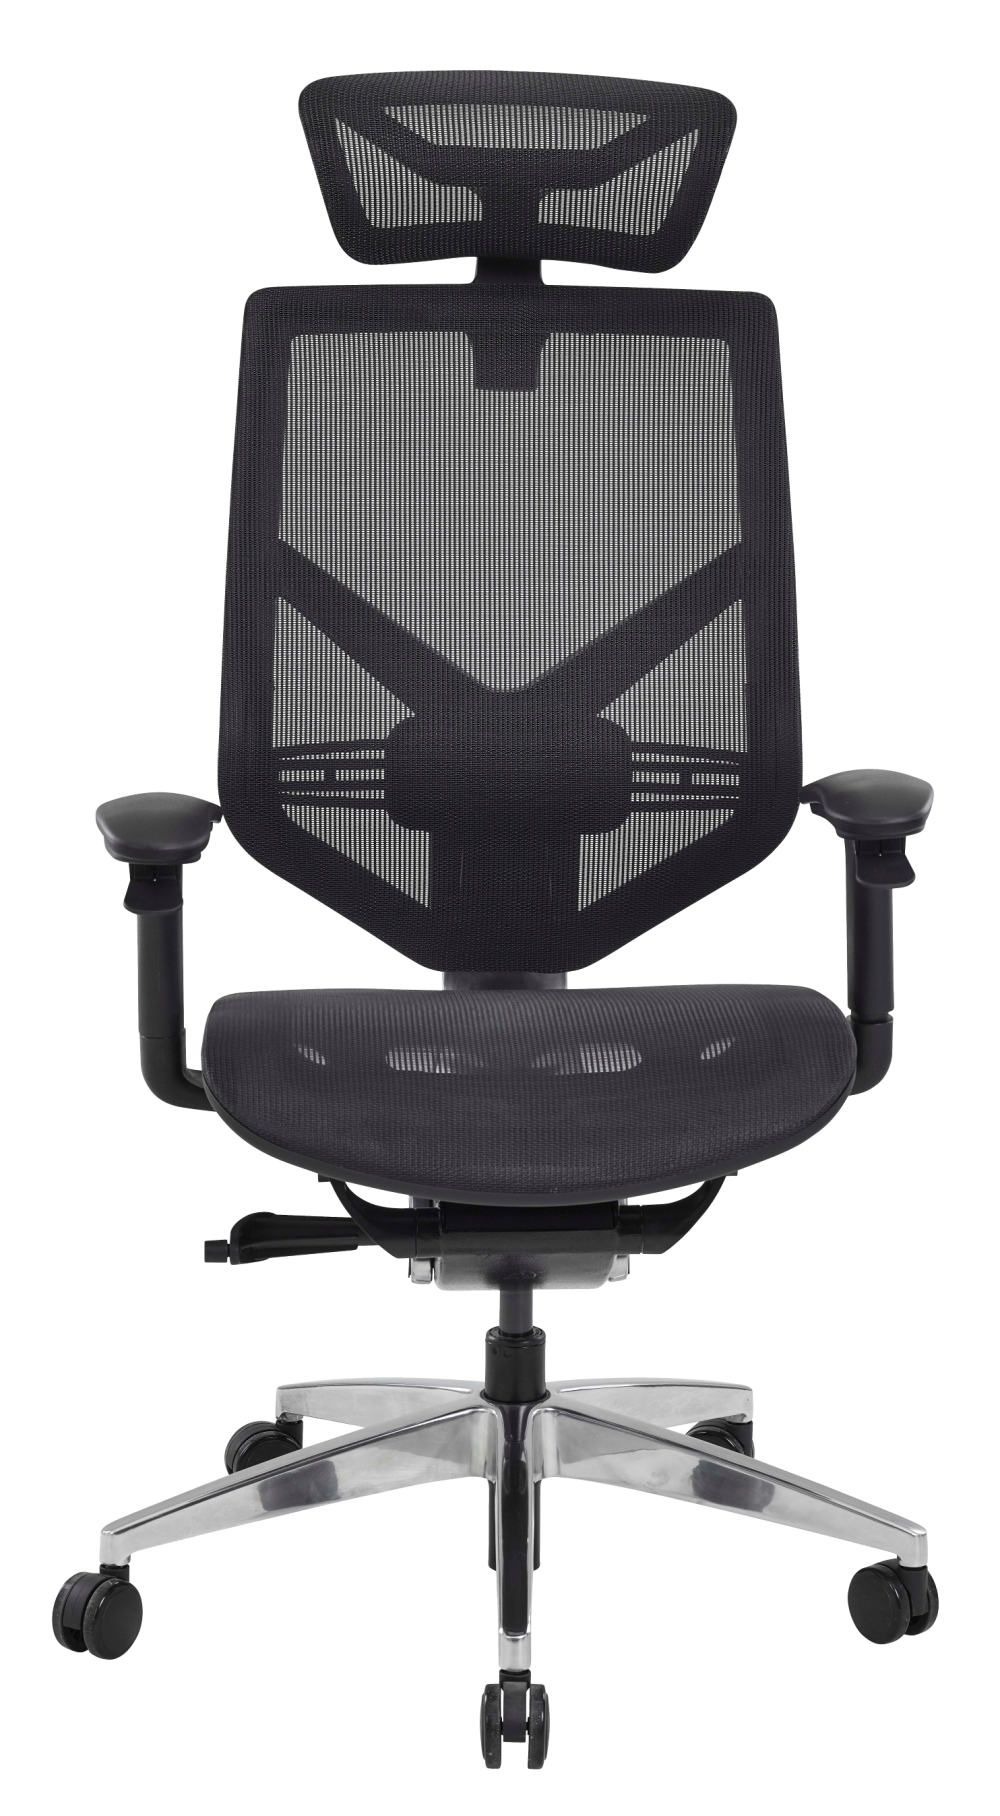 definitief Heel diepgaand SIT_TECHNO7620 Techno - Ergonomische stoel met hoge rugleuning en  hoofdsteun - BuroDepo meubles et mobilier de bureau neufs et occasions  nieuwe en occasie kantoormeubelen